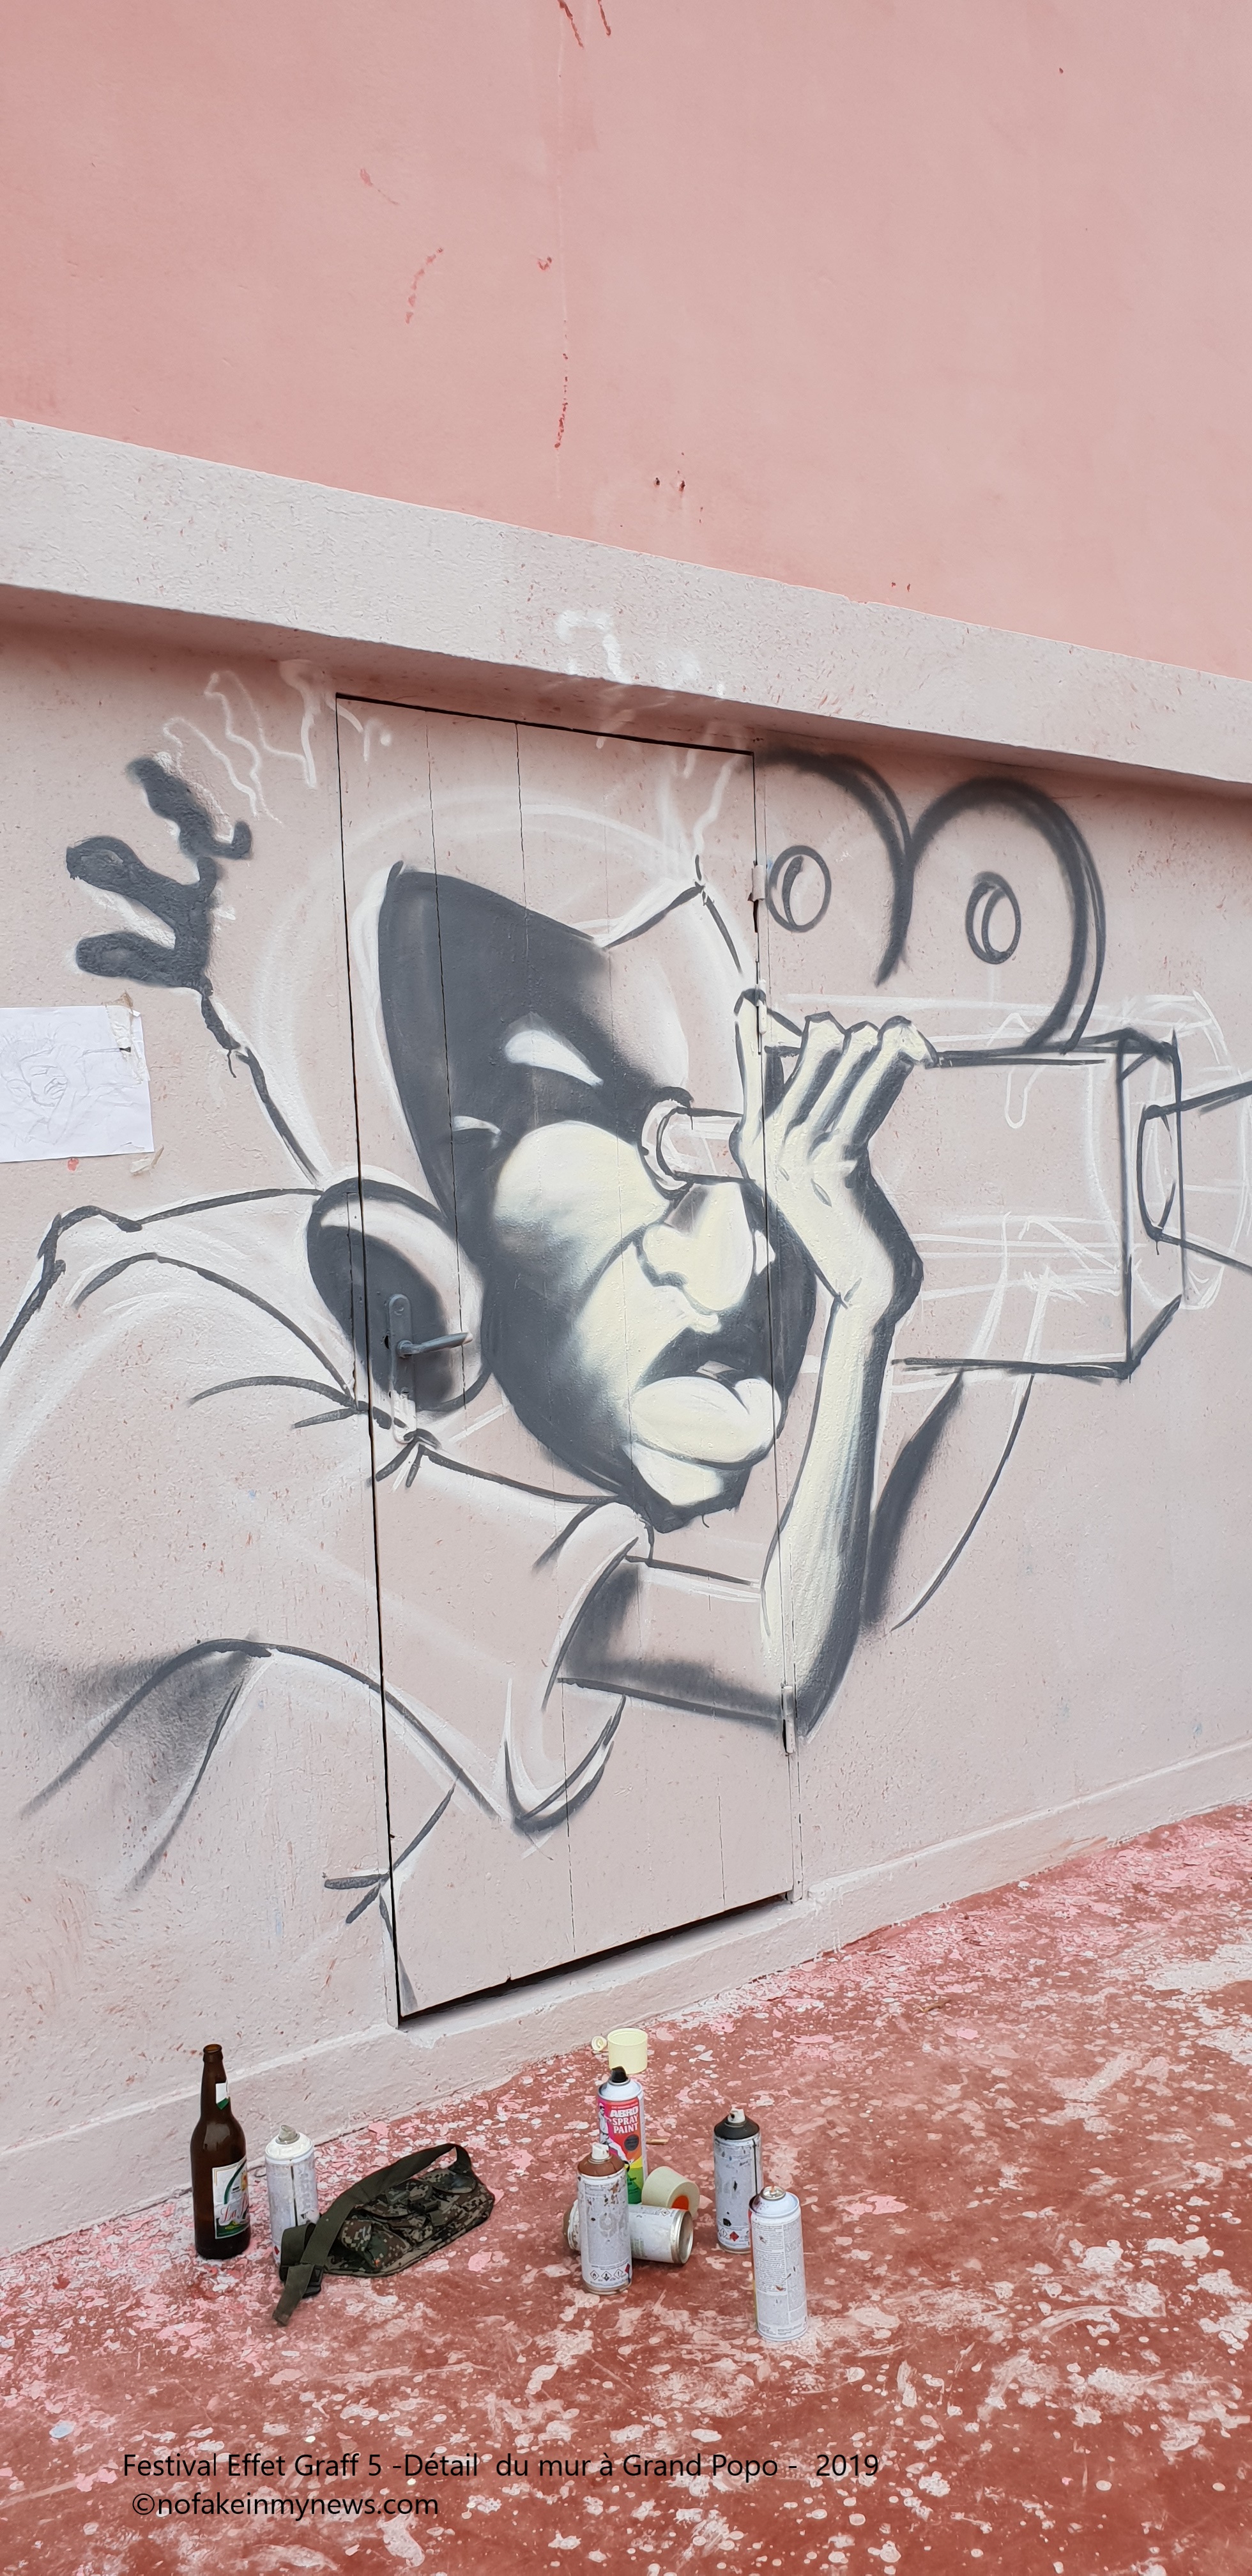 Festival Effet Graff 5 -Détail du mur à Grand-Popo 2019 - ©nofakeinmynews